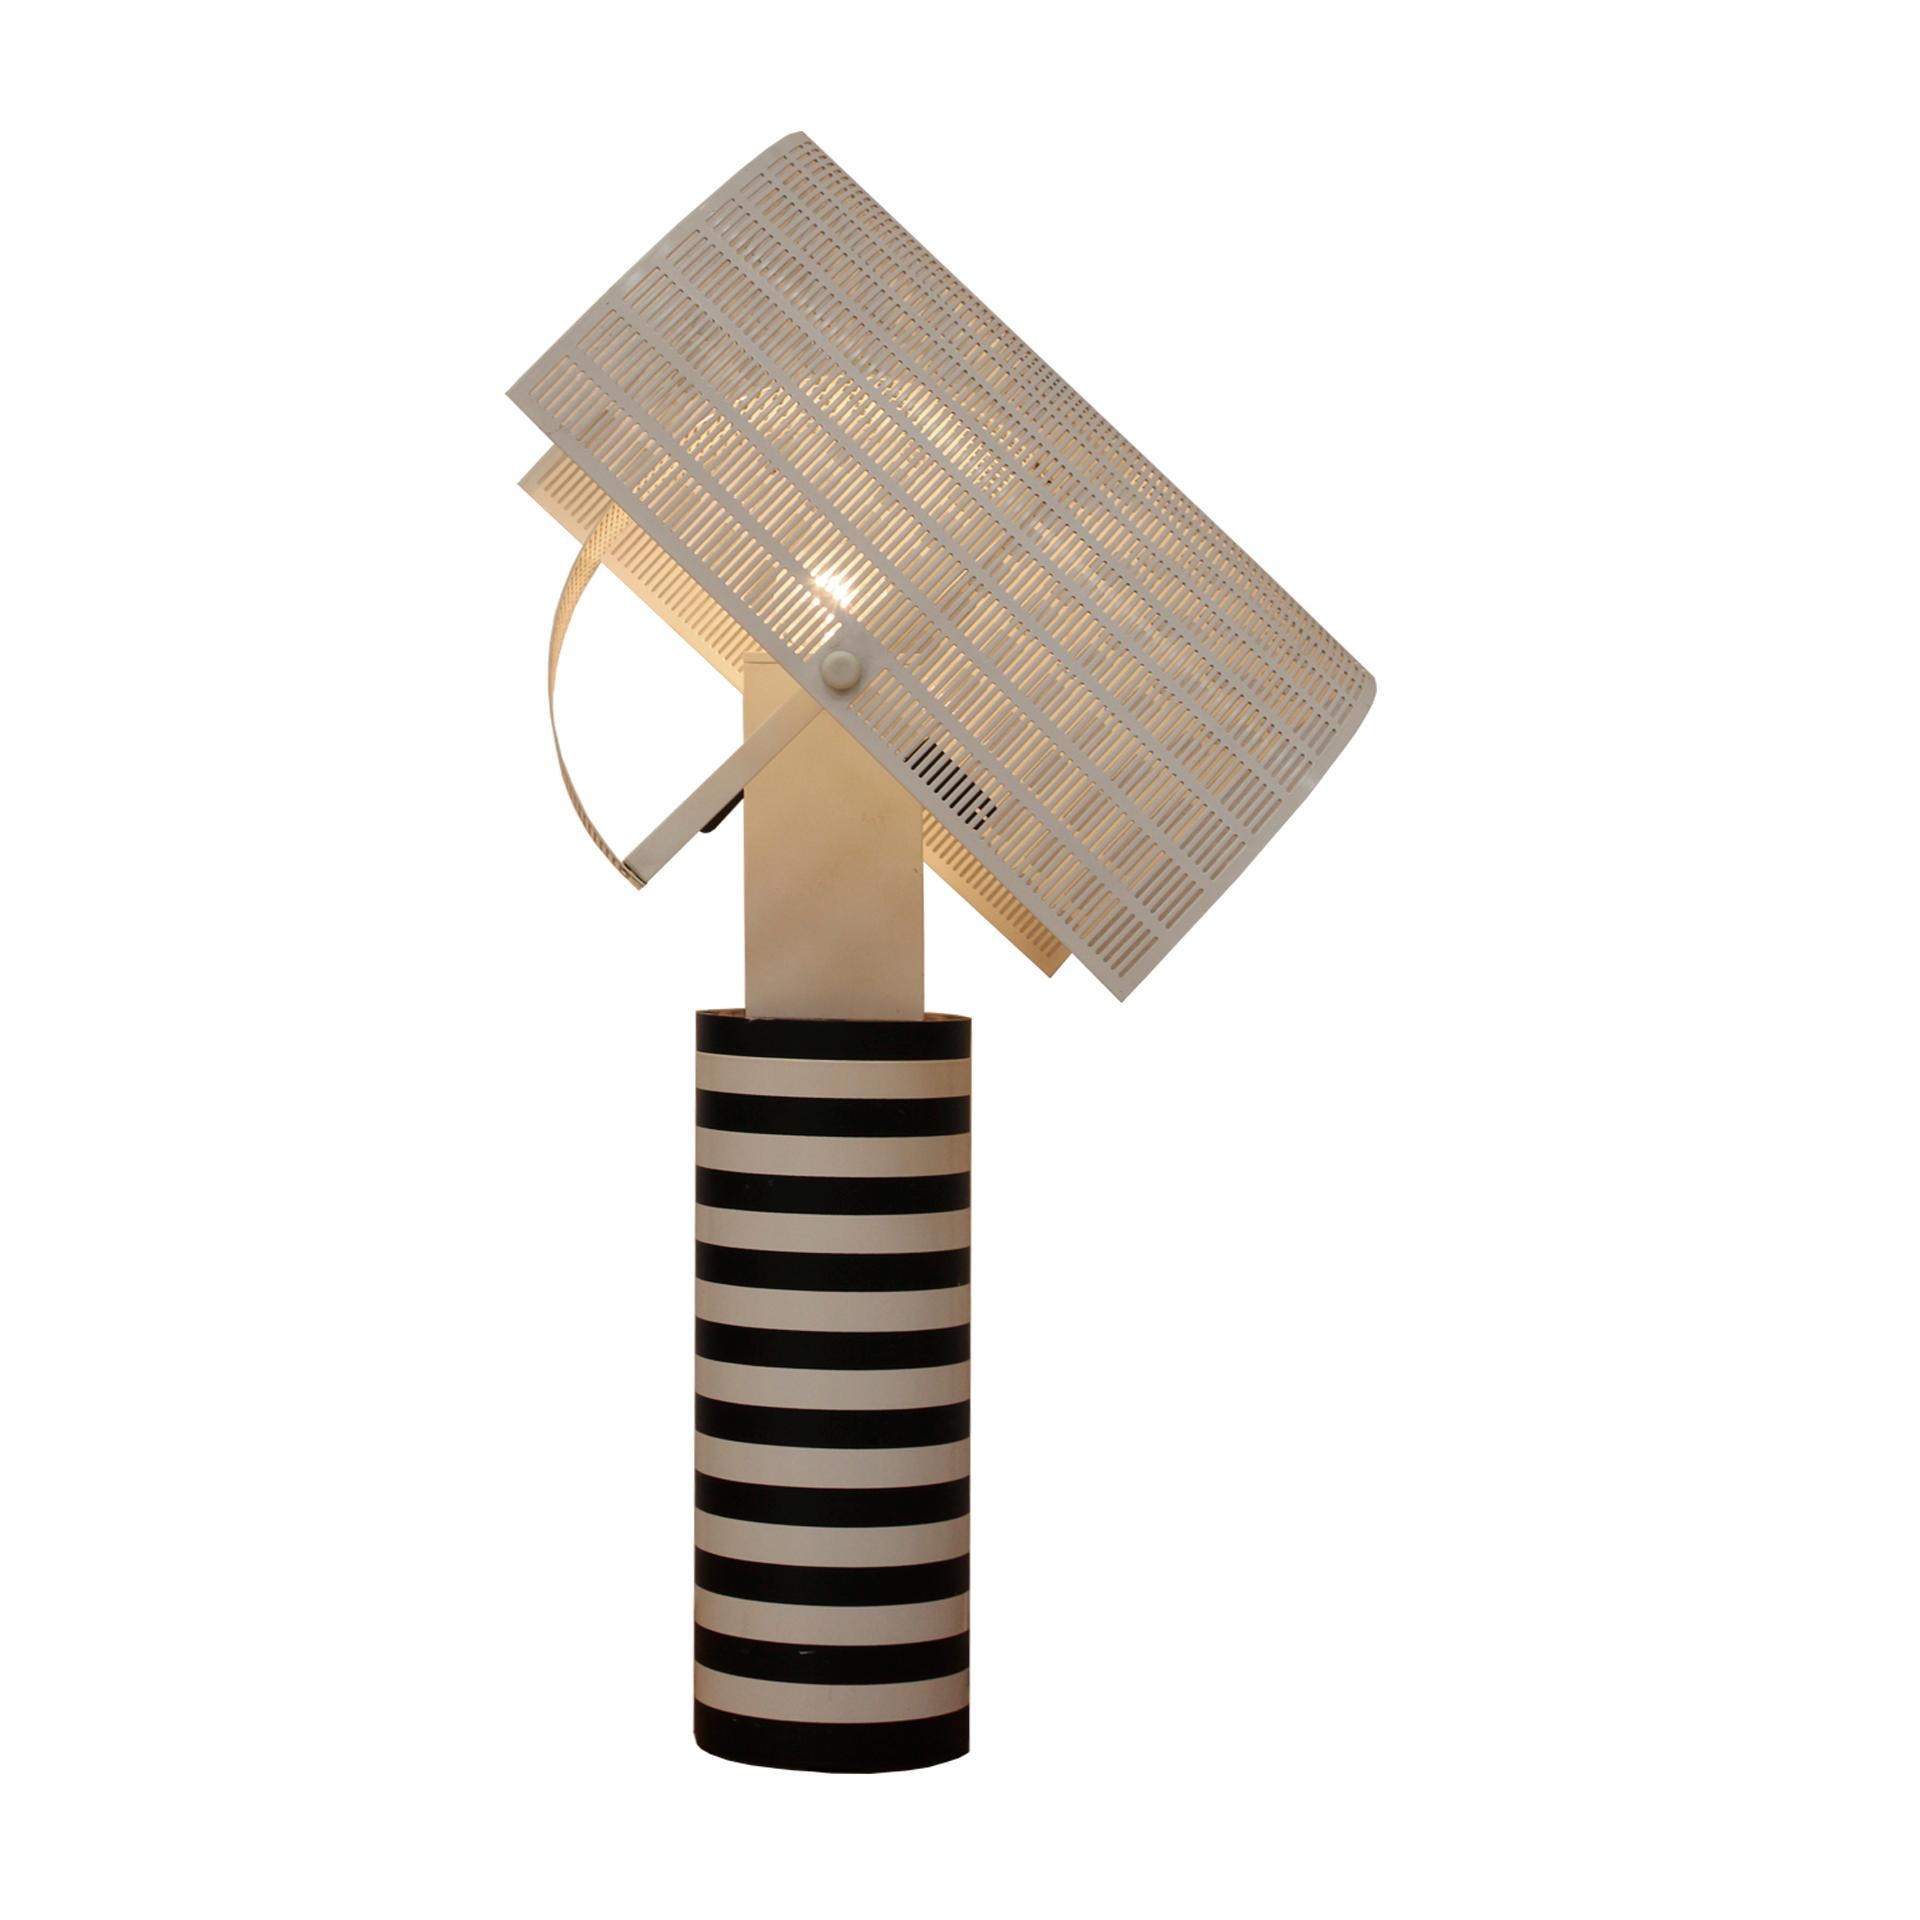 Lampe de table mod Shogun conçue par Mario Botta pour Artemide. Fabriqué en acier et en aluminium. Dessus de lampe réglable en tôle perforée. Italie années 1980.

La lampe présente une forme cylindrique distincte, méticuleusement fabriquée avec des